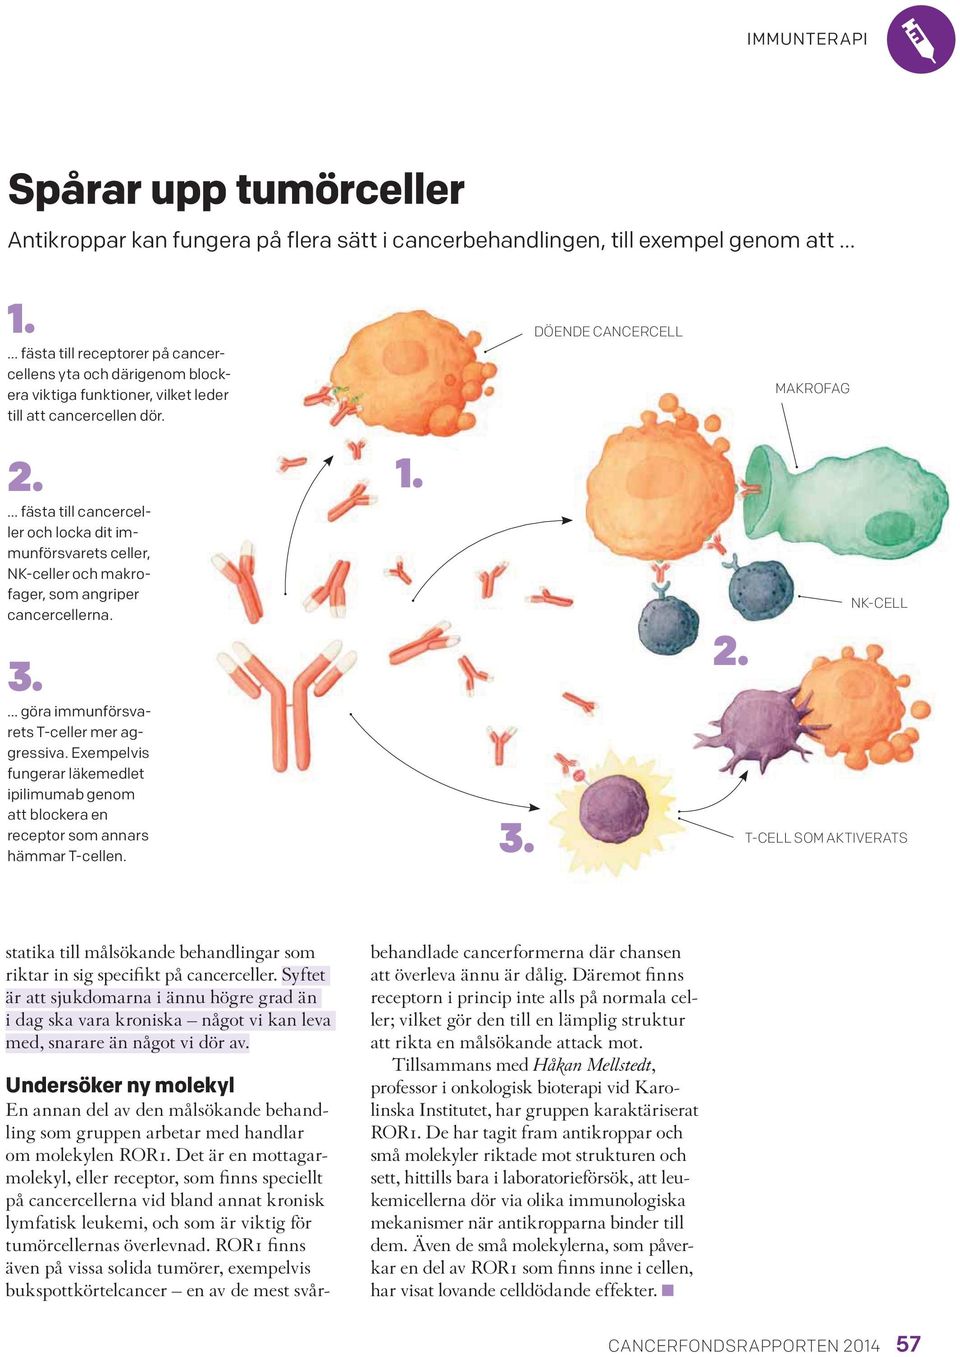 fästa till cancerceller och locka dit immunförsvarets celler, NK-celler och makrofager, som angriper cancercellerna. 3. göra immunförsvarets T-celler mer aggressiva.